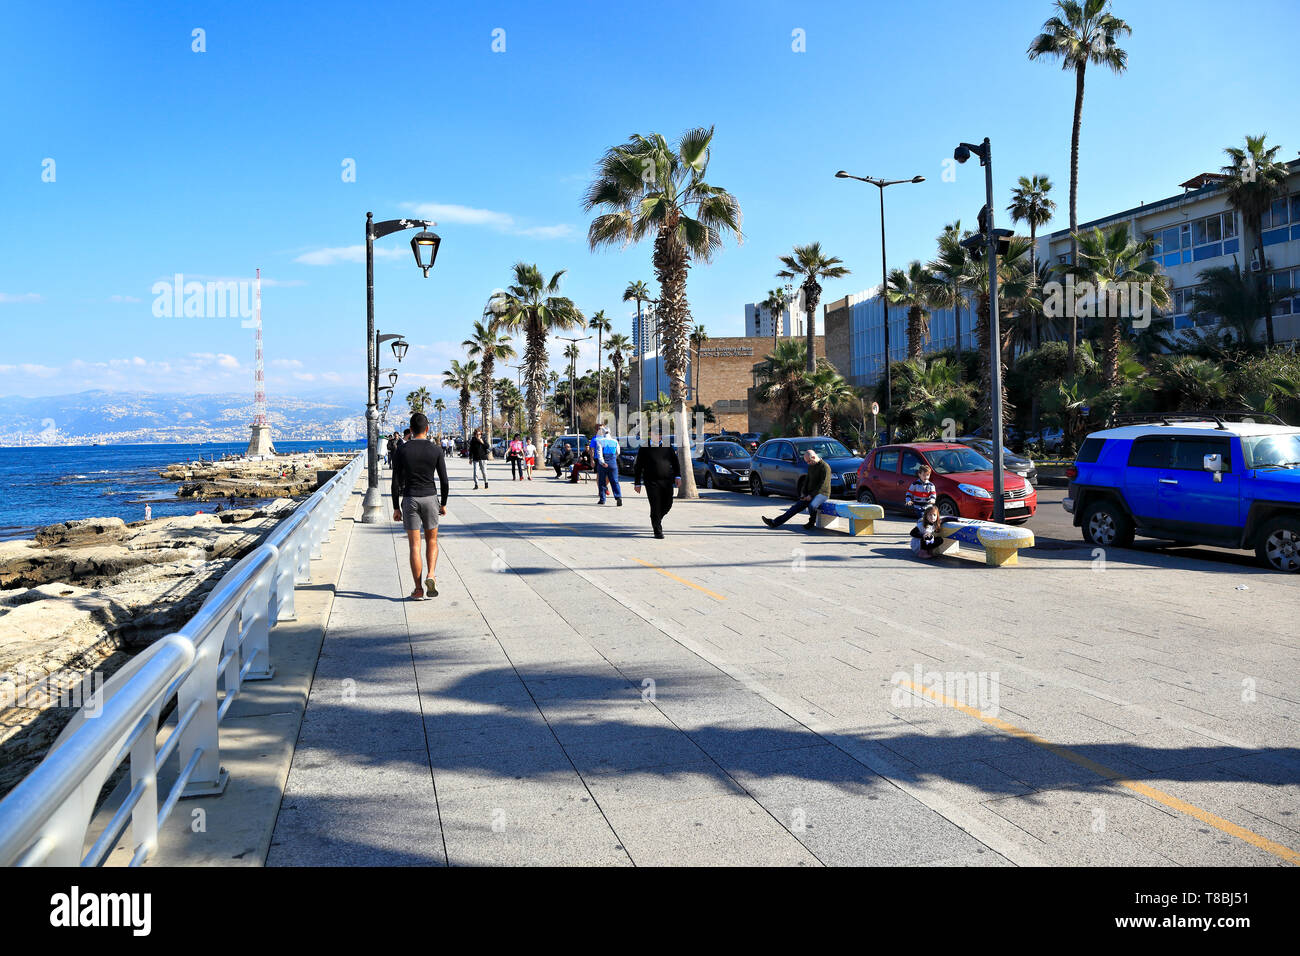 Immagine editoriale di Beirut, Libano - 25.Dec.2018: Persone e rilassante passeggiare su Beirut il famoso lungomare Corniche. Foto Stock